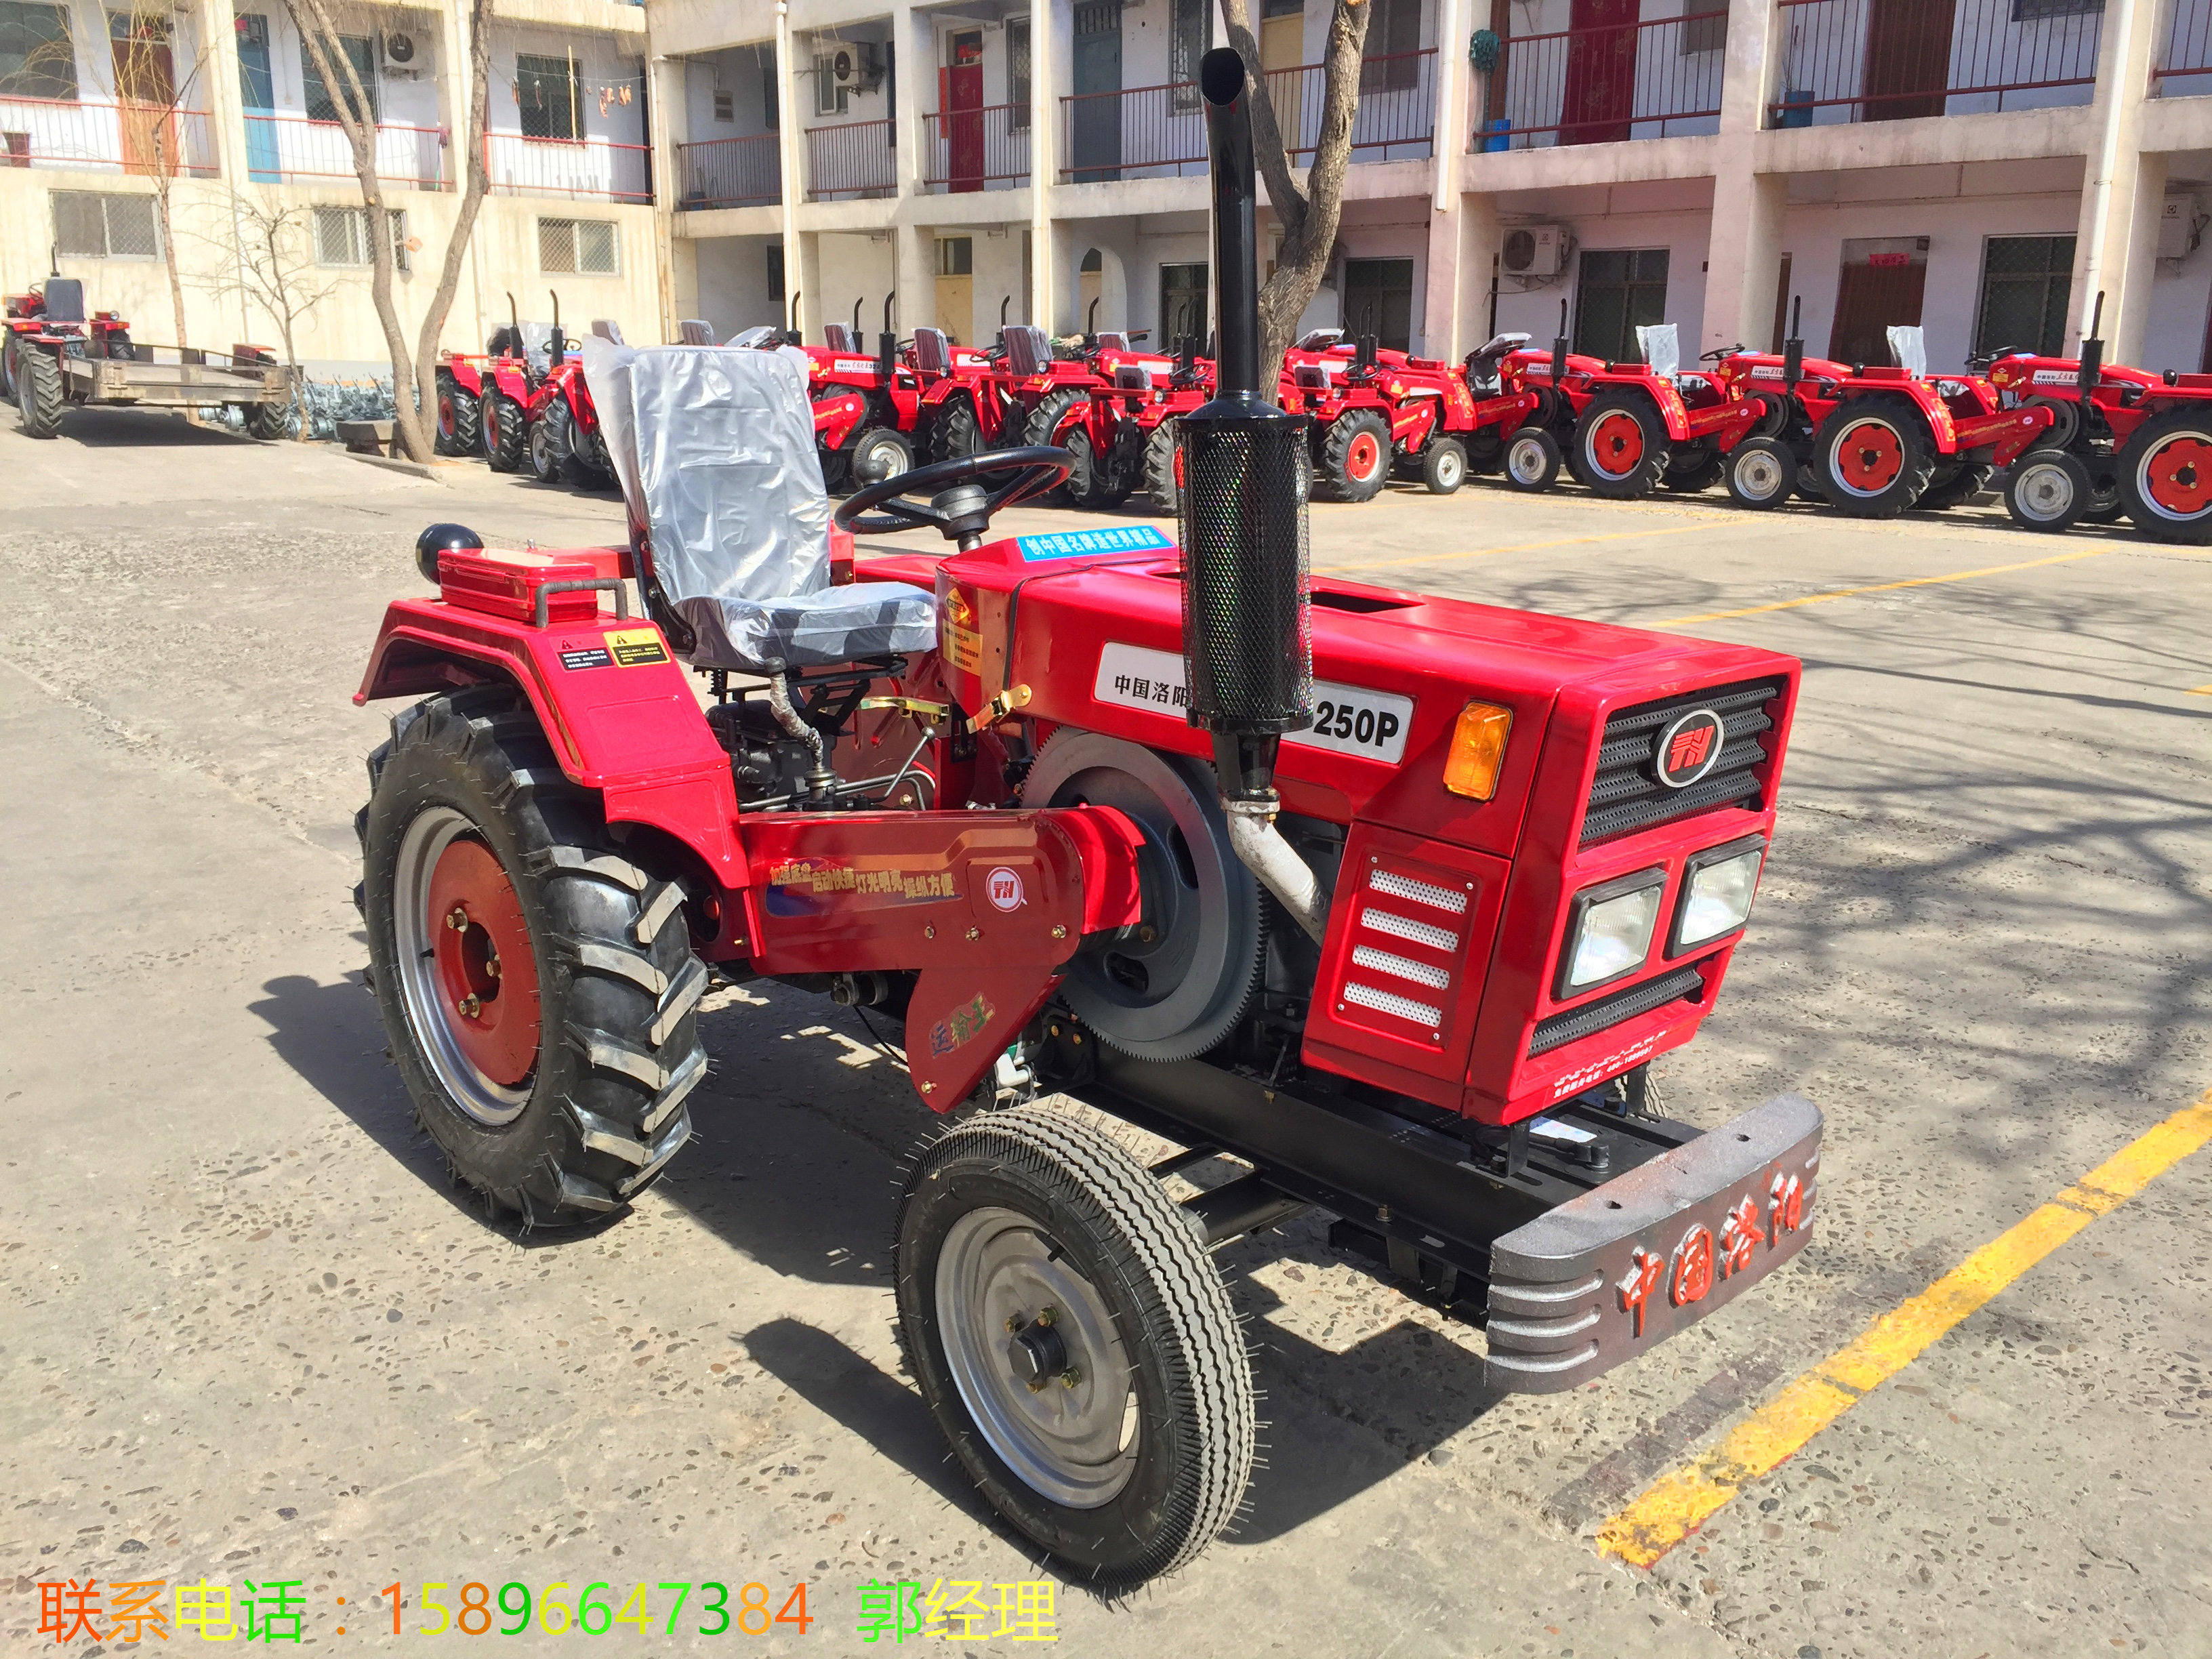 全新洛阳泰红厂家直销农用四轮小型拖拉机低价促销 25